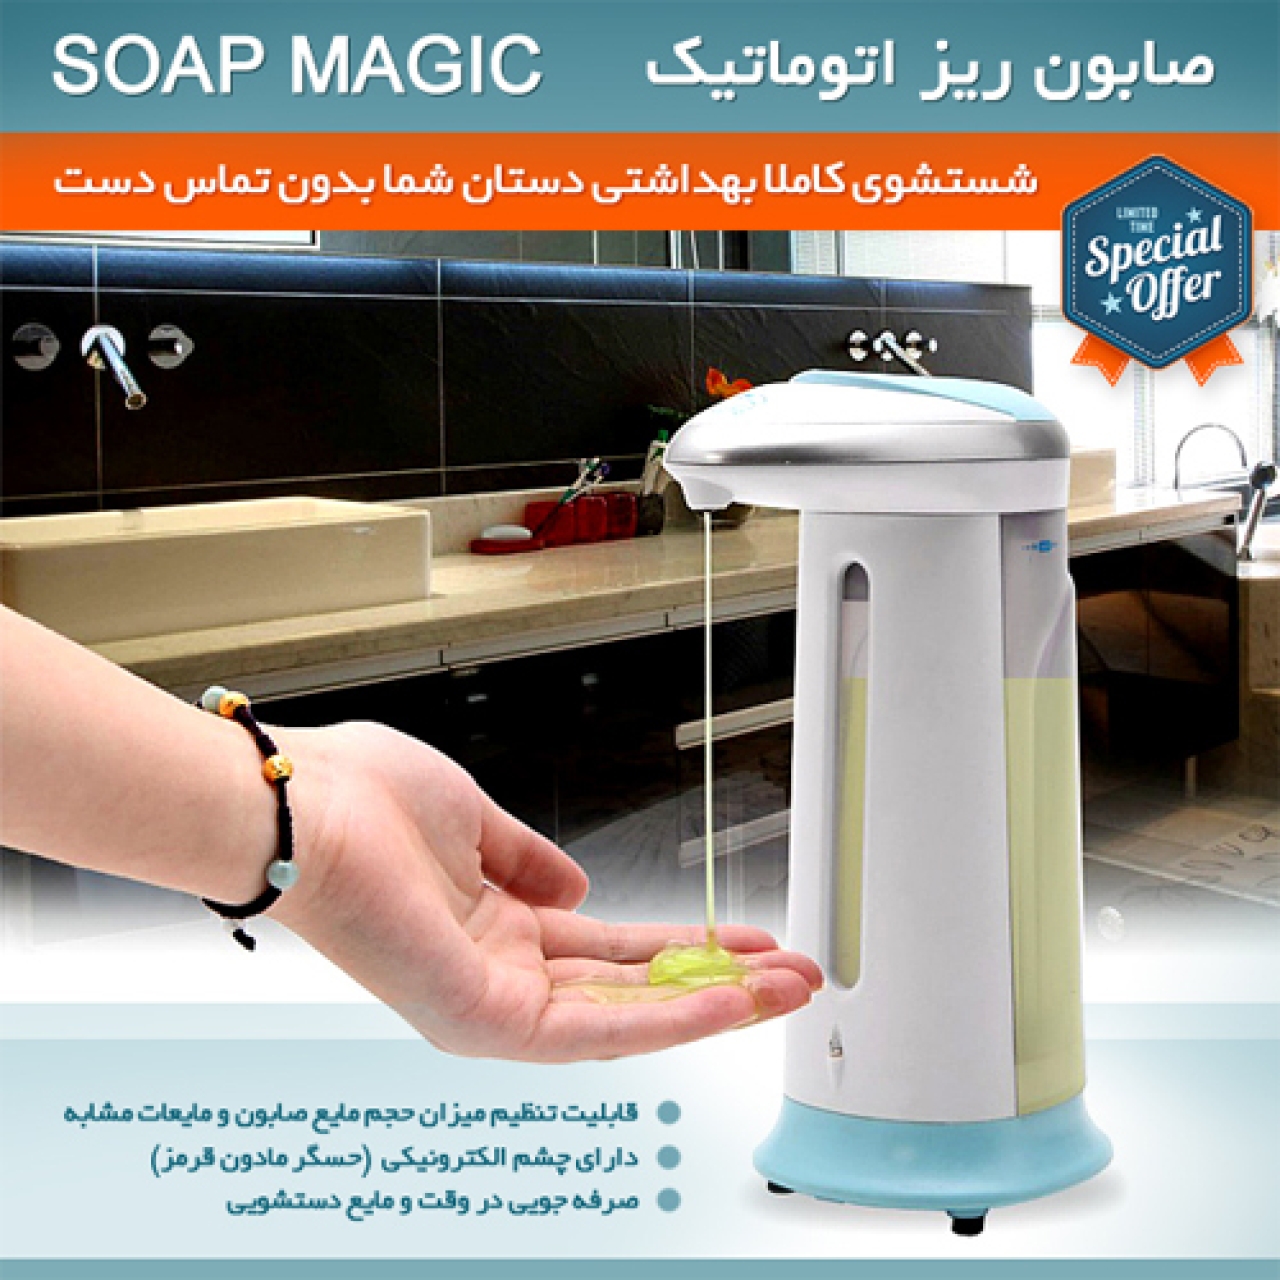 مایع ریز اتوماتیک مدل Soap Magic